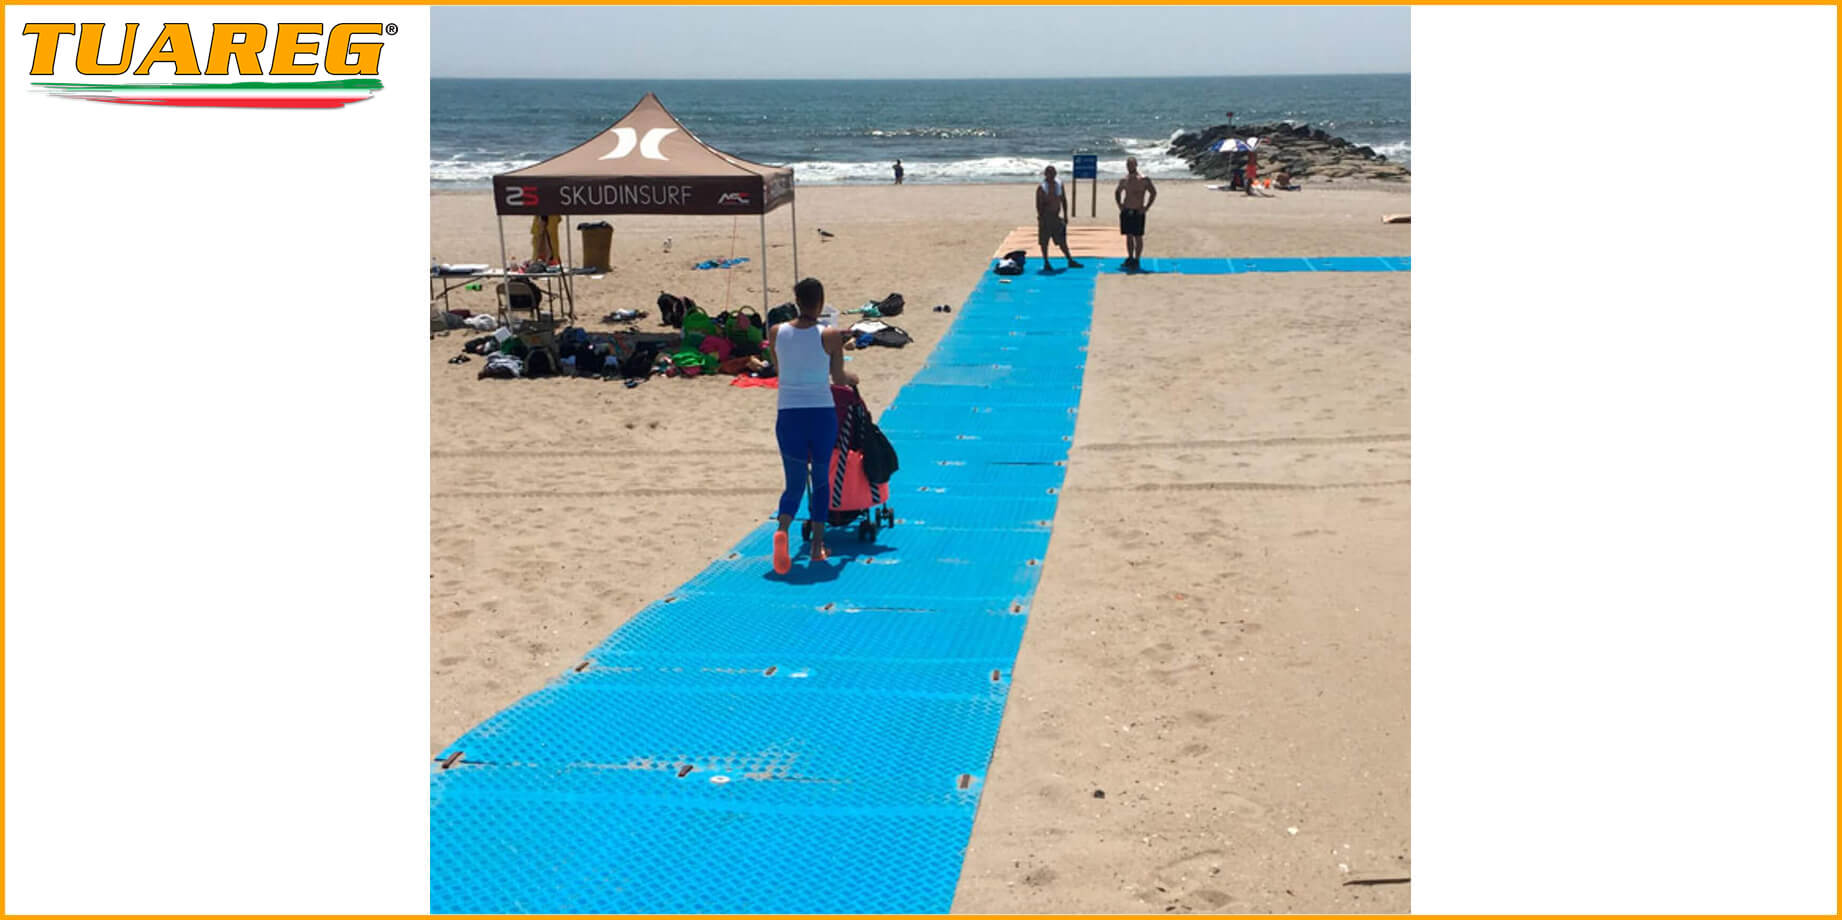 Tappeto/Passerella Carrabile da Spiaggia - Tuareg Access - Prodotto/Accessorio per l'Accessibilità delle Spiagge